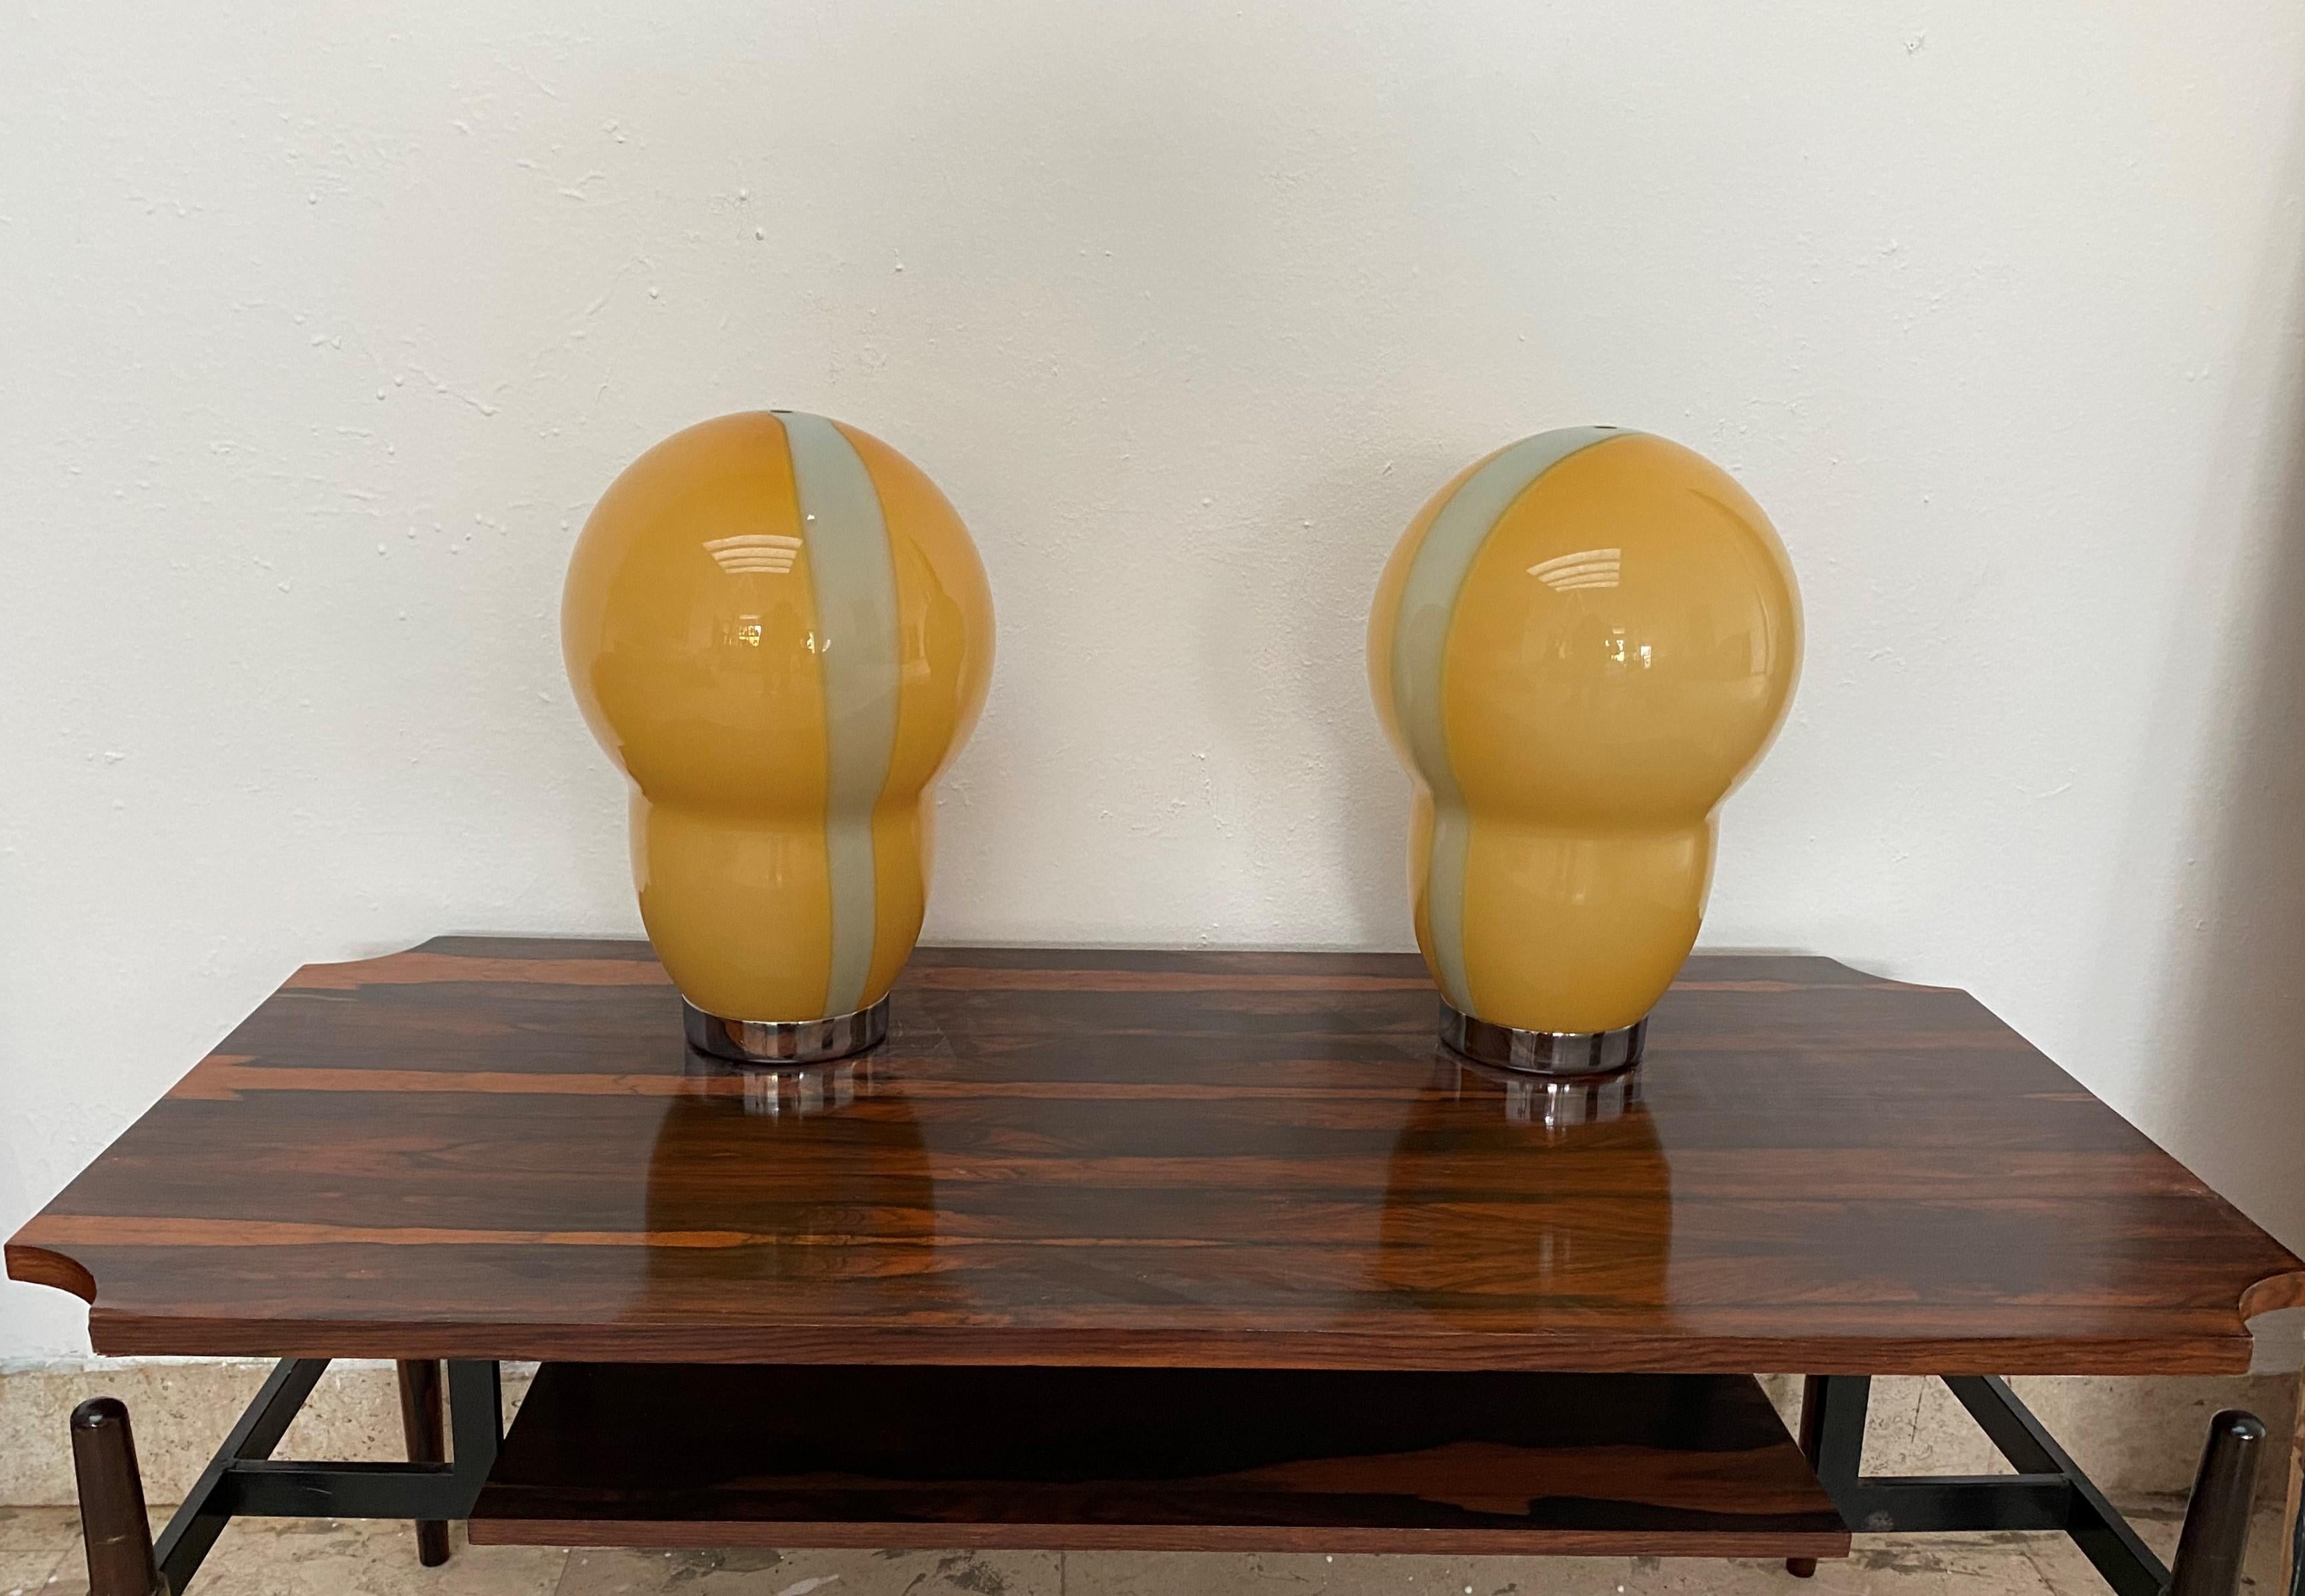 Schön  tischlampen aus mundgeblasenem Muranoglas in Orange und Grün.
Entworfen von Ettore Sottsass für Venini und hergestellt 1994.
Der Glasschirm ist mit 